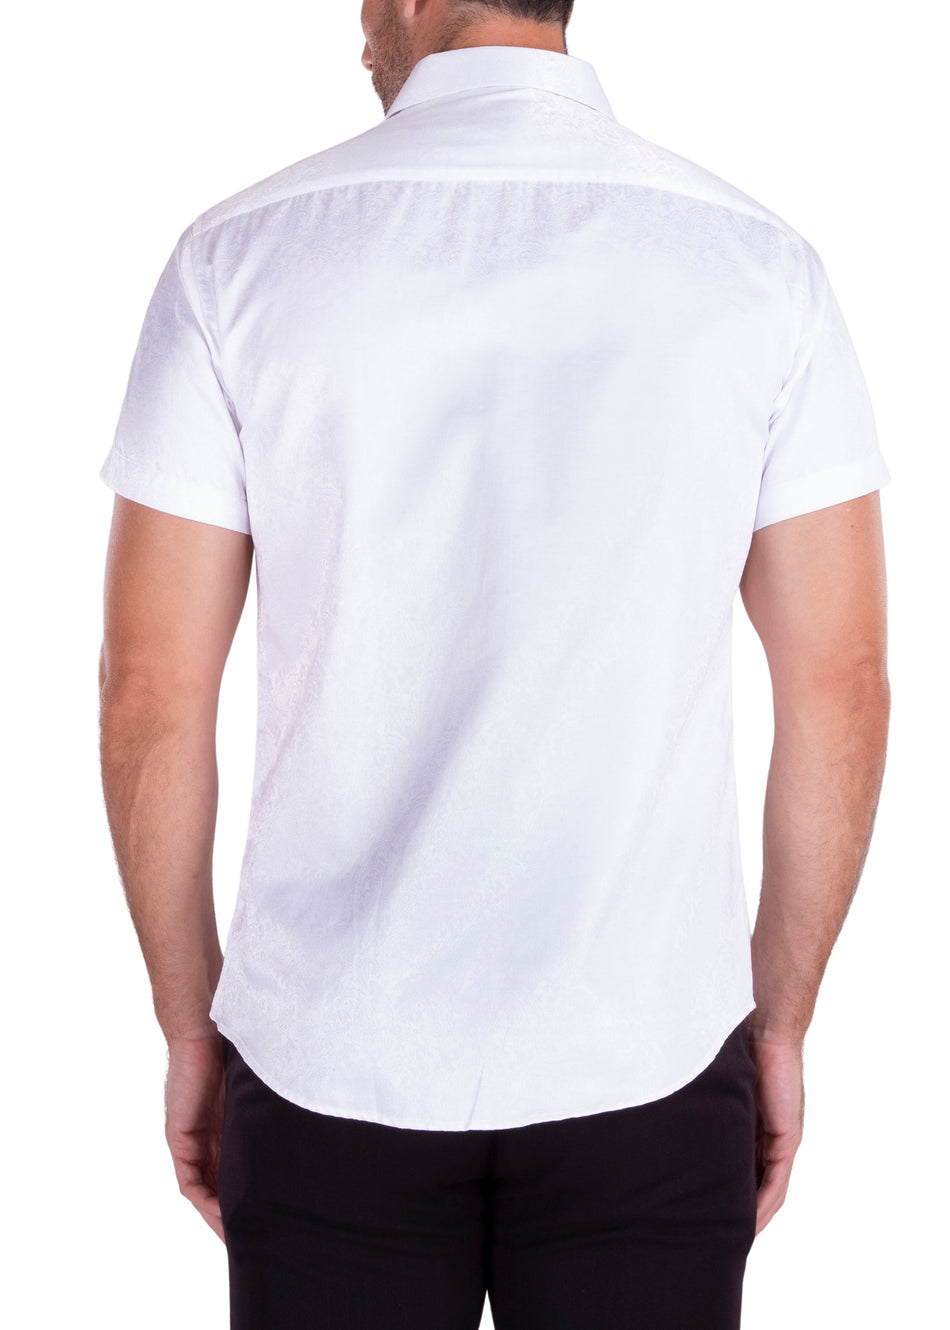 192117 - Men's White Button Up Short Sleeve Dress Shirt